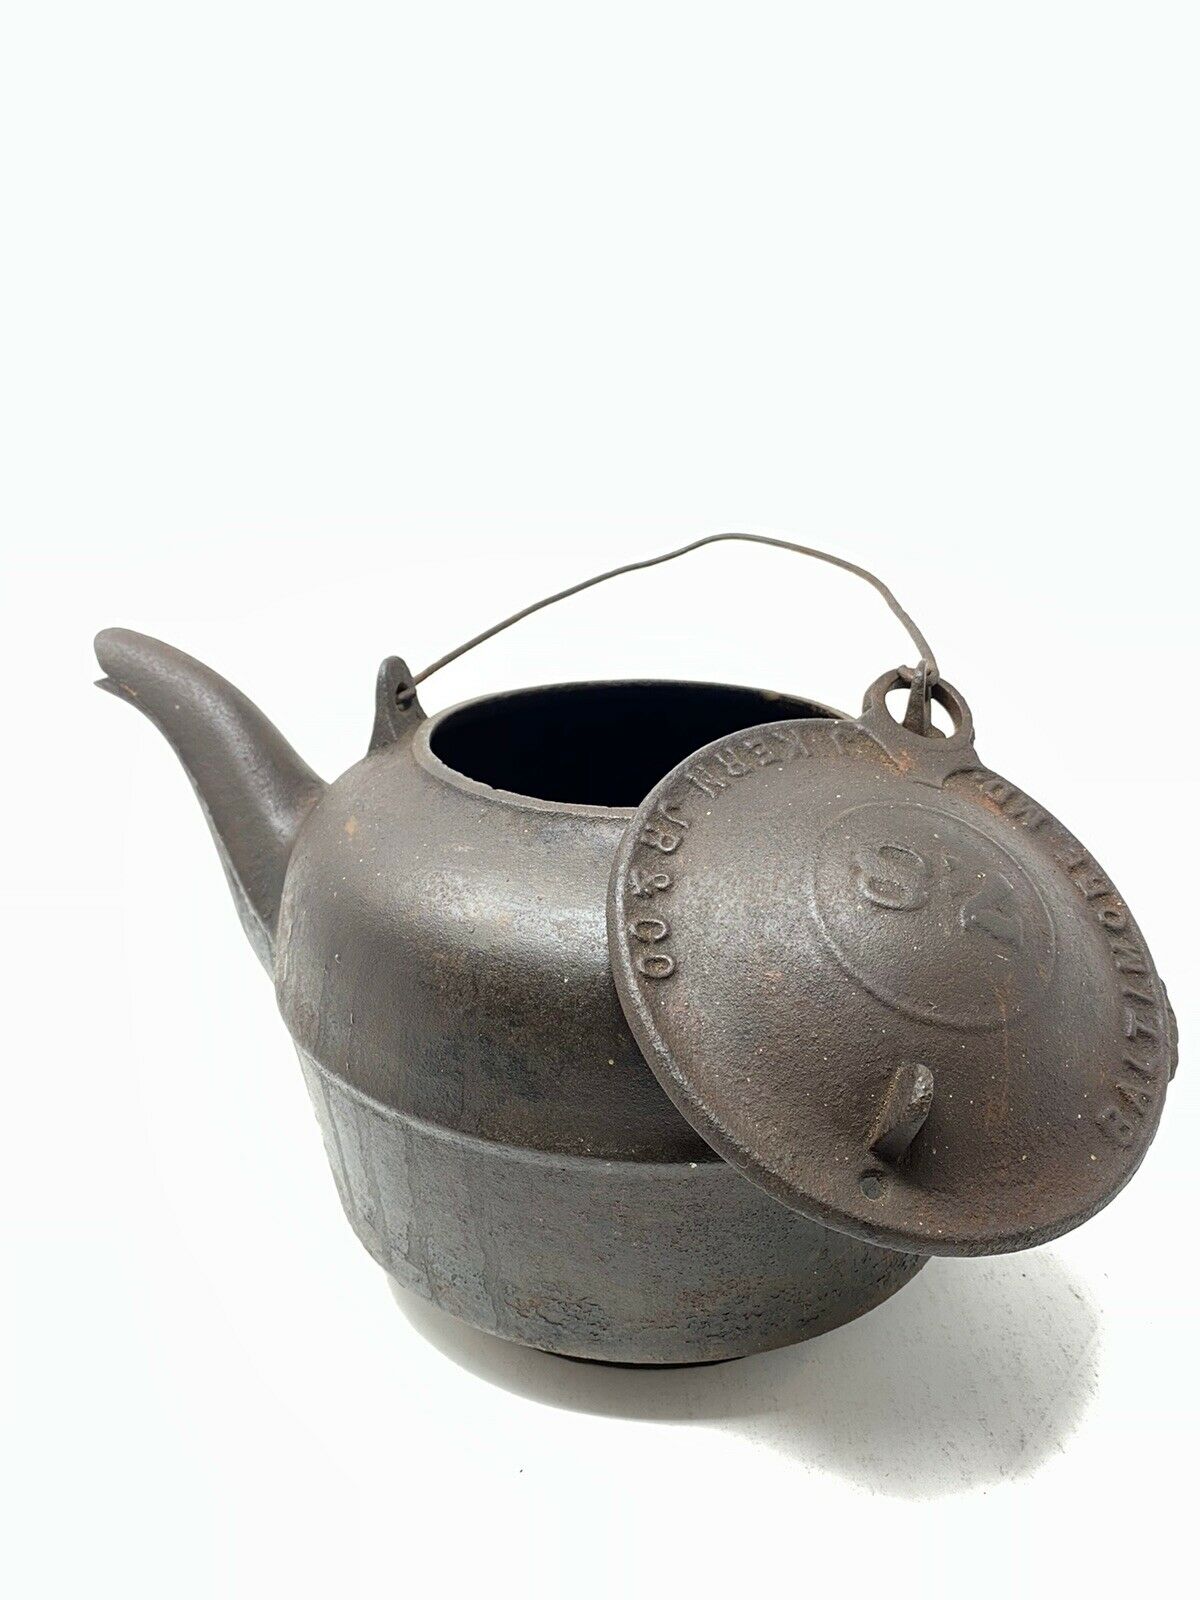 Antique cast iron Tea Kettle Number 7 coffee pot Primitive